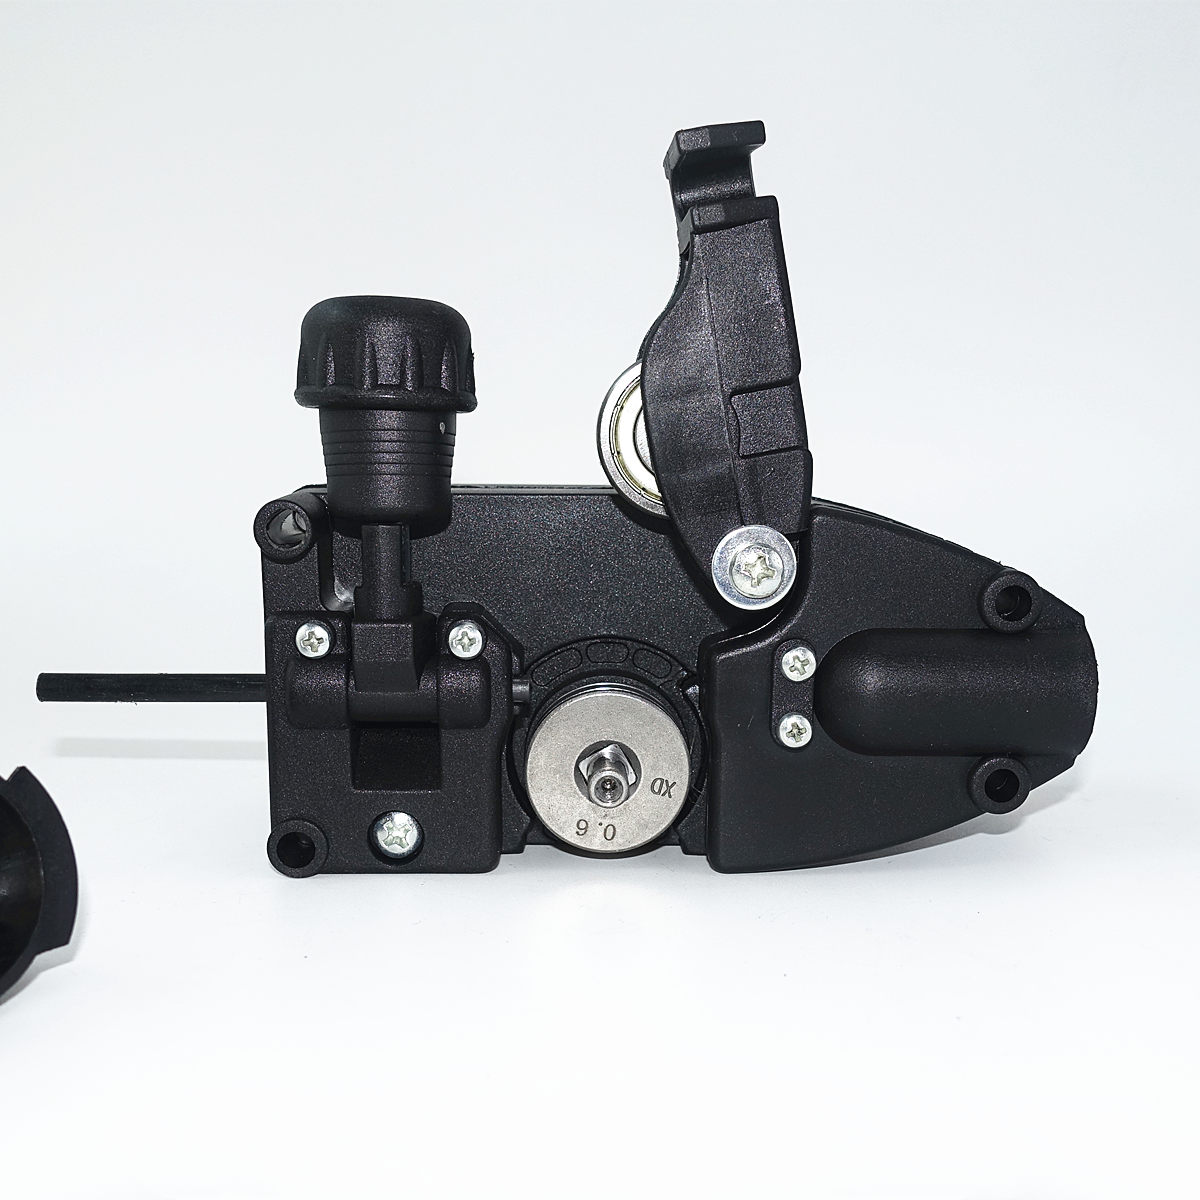 Dc 24v mini-trådføder ssj -16 mig / mag svejsemaskine trådfremføringsenhed